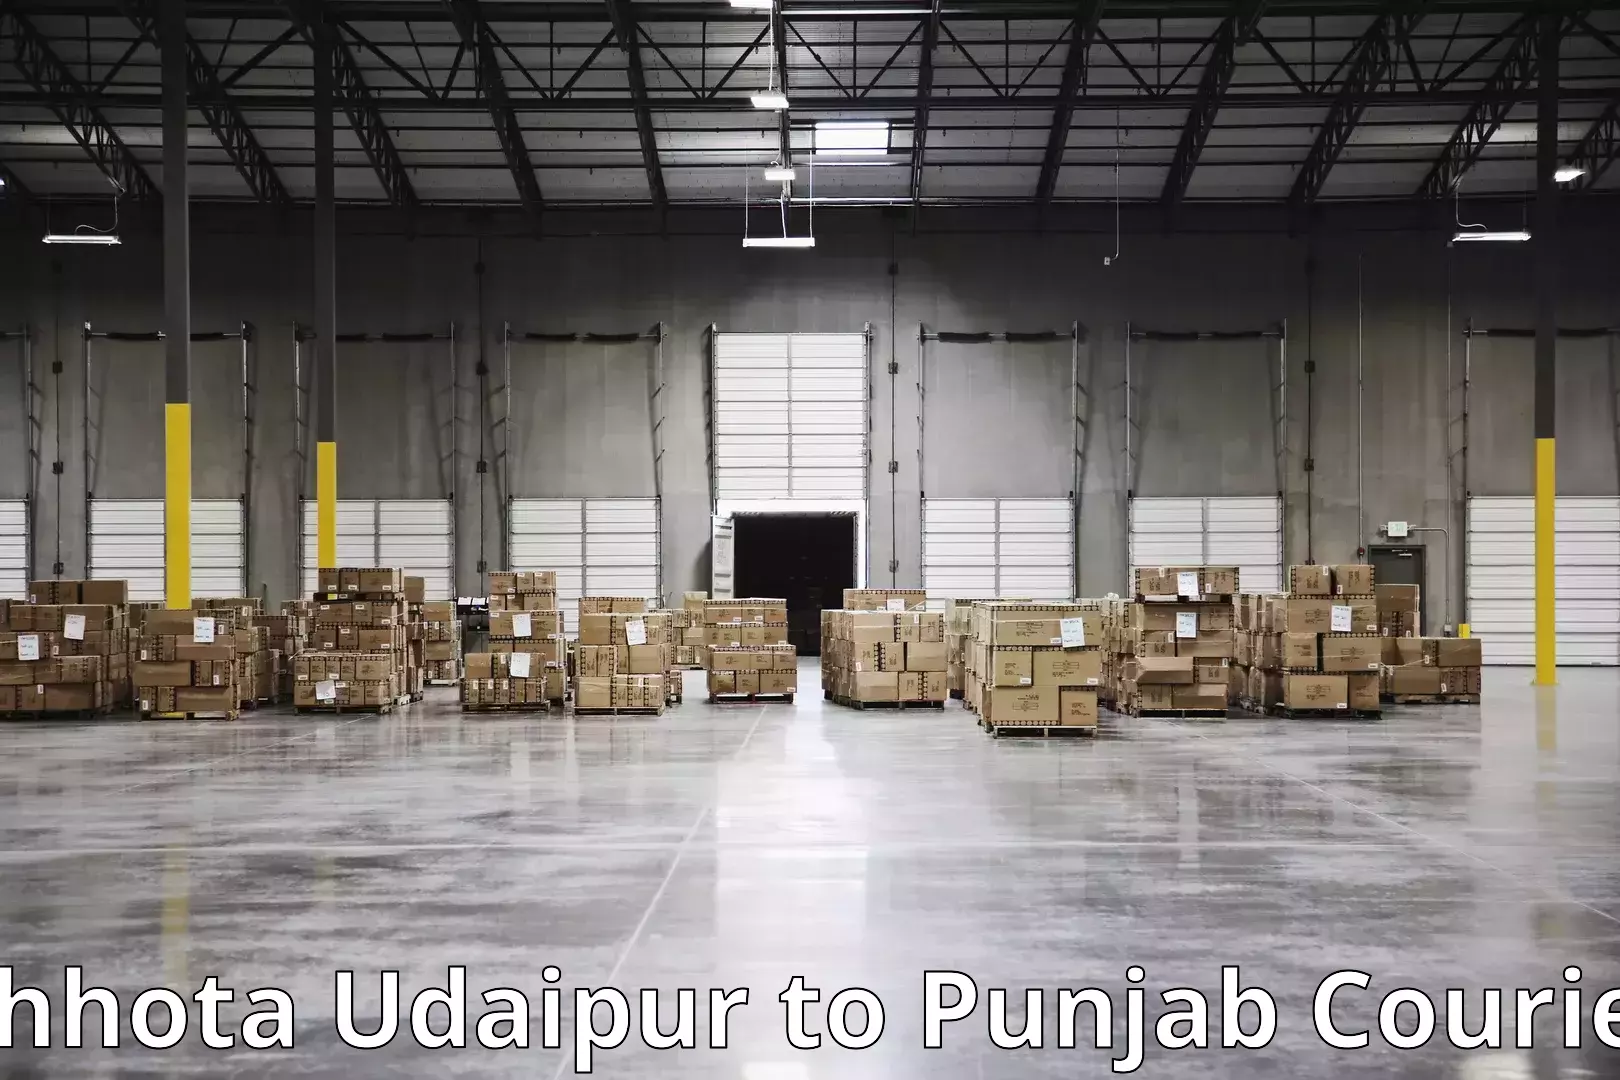 Custom moving plans Chhota Udaipur to Punjab